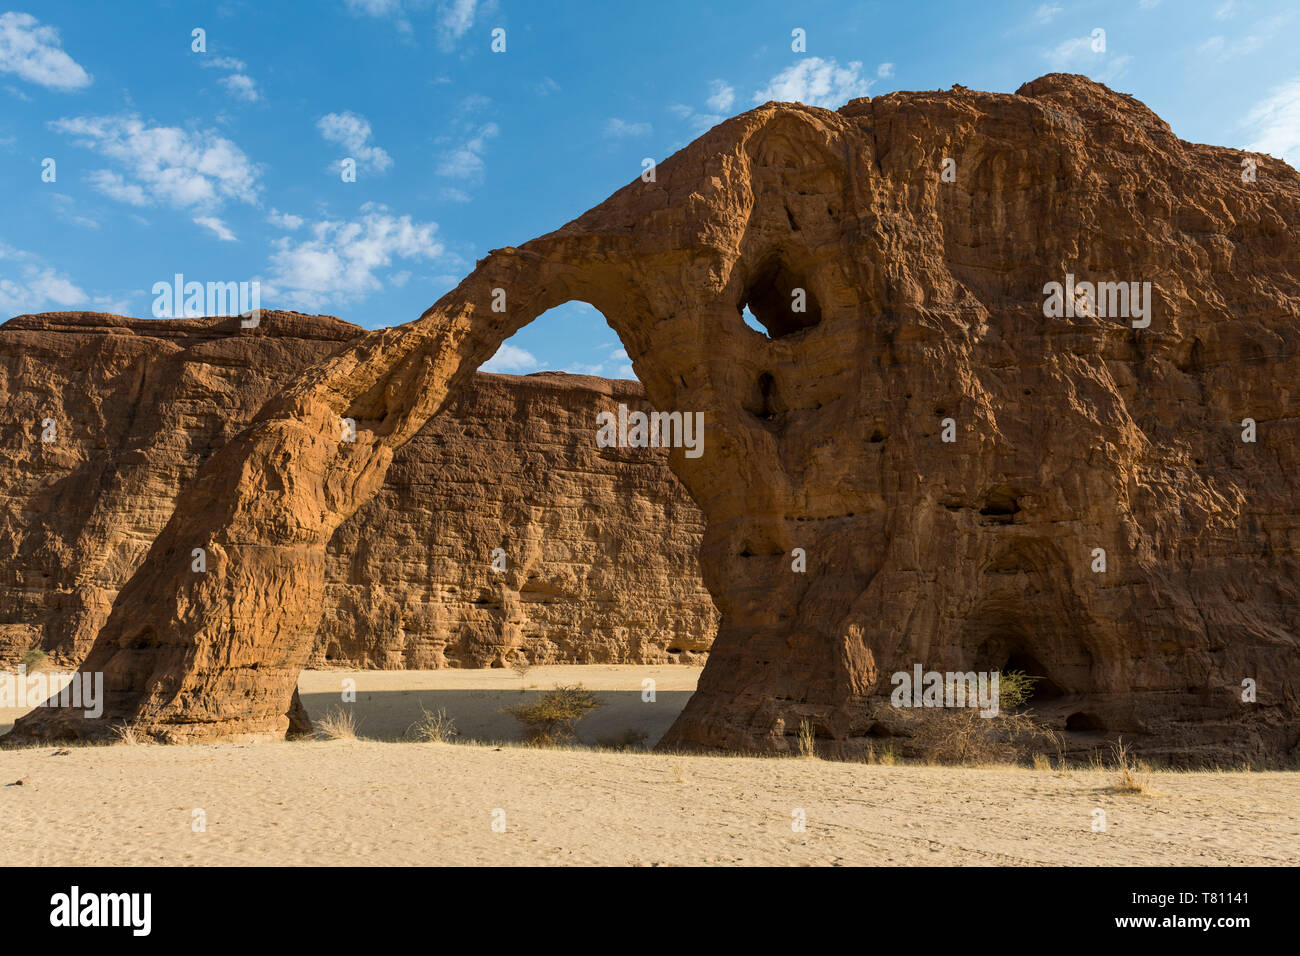 Arco de roca del elefante, la Meseta de Ennedi, Sitio del Patrimonio Mundial de la UNESCO, la región de Ennedi, Chad, África Foto de stock